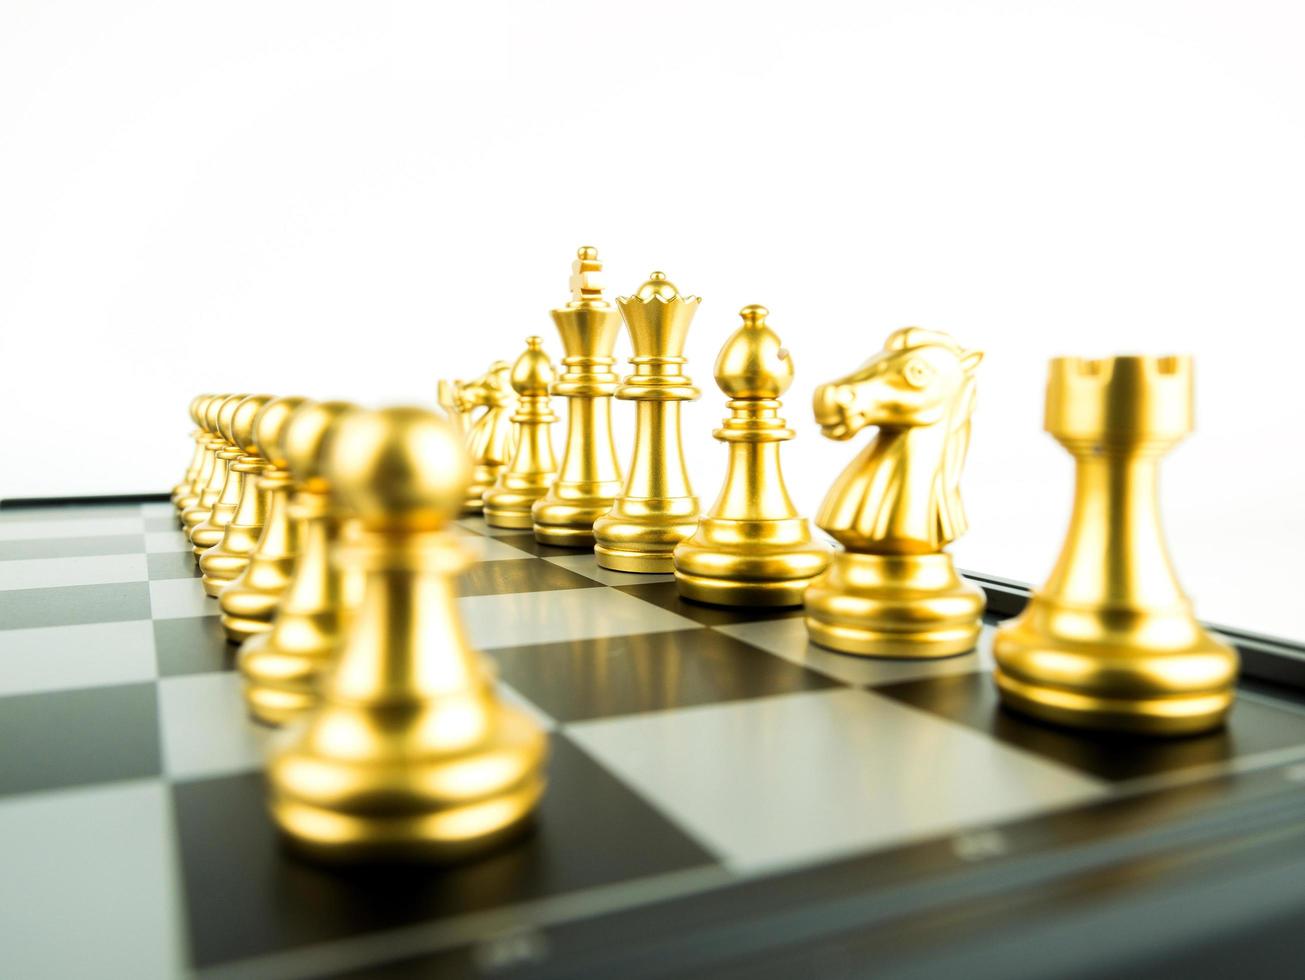 guld schacksiffror ombord för spelstart, intellektuell sport och taktikspel foto